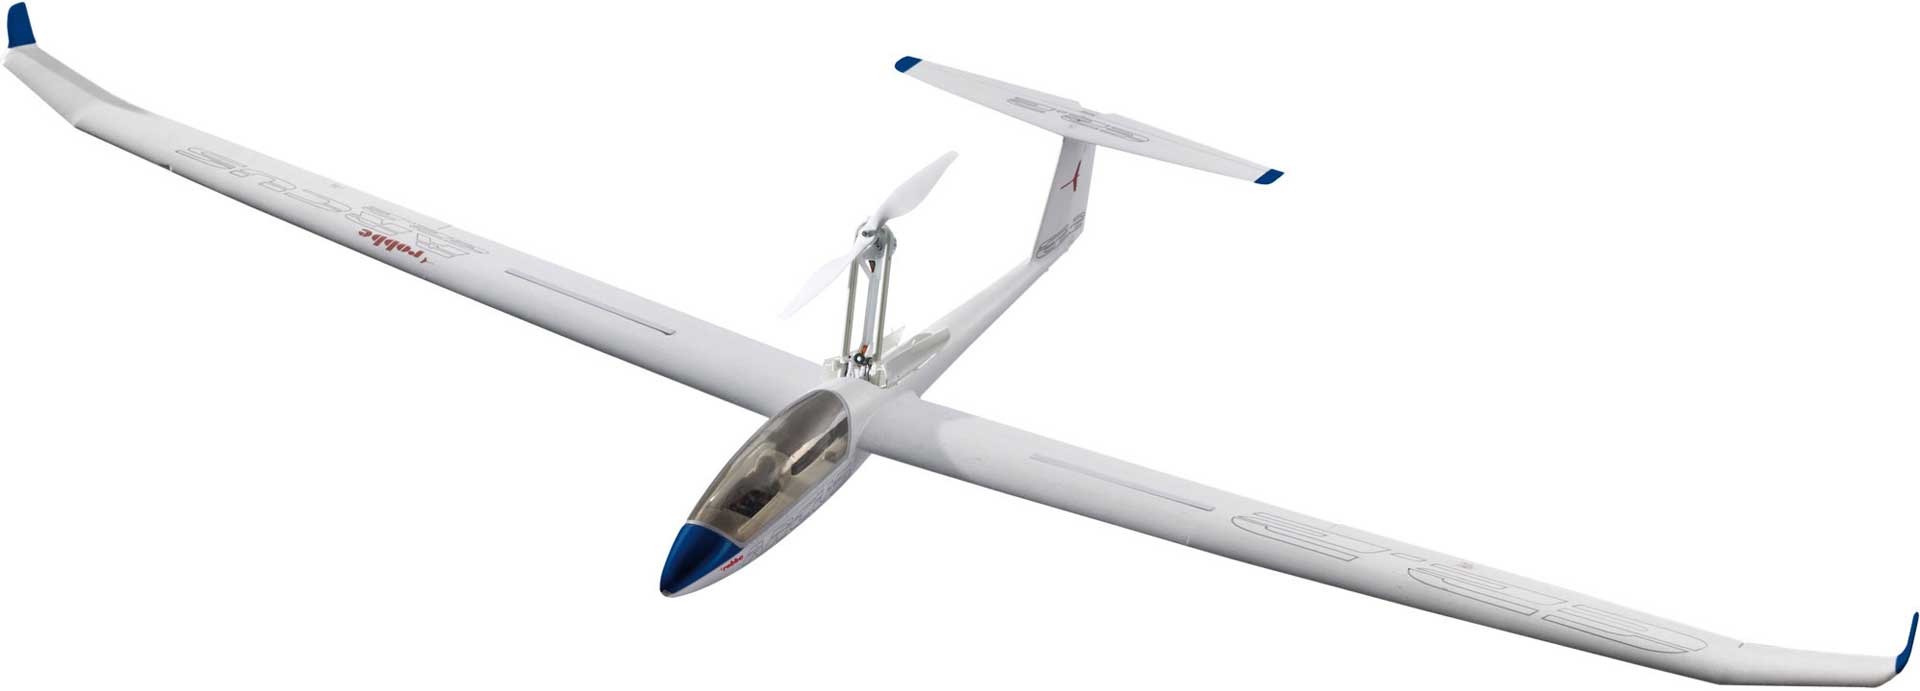 Robbe Modellsport ARCUS E 2.2 ARF(PNP) avec moteur à pales repliables Train d'atterrissage rétractable et volets d'atterrissage